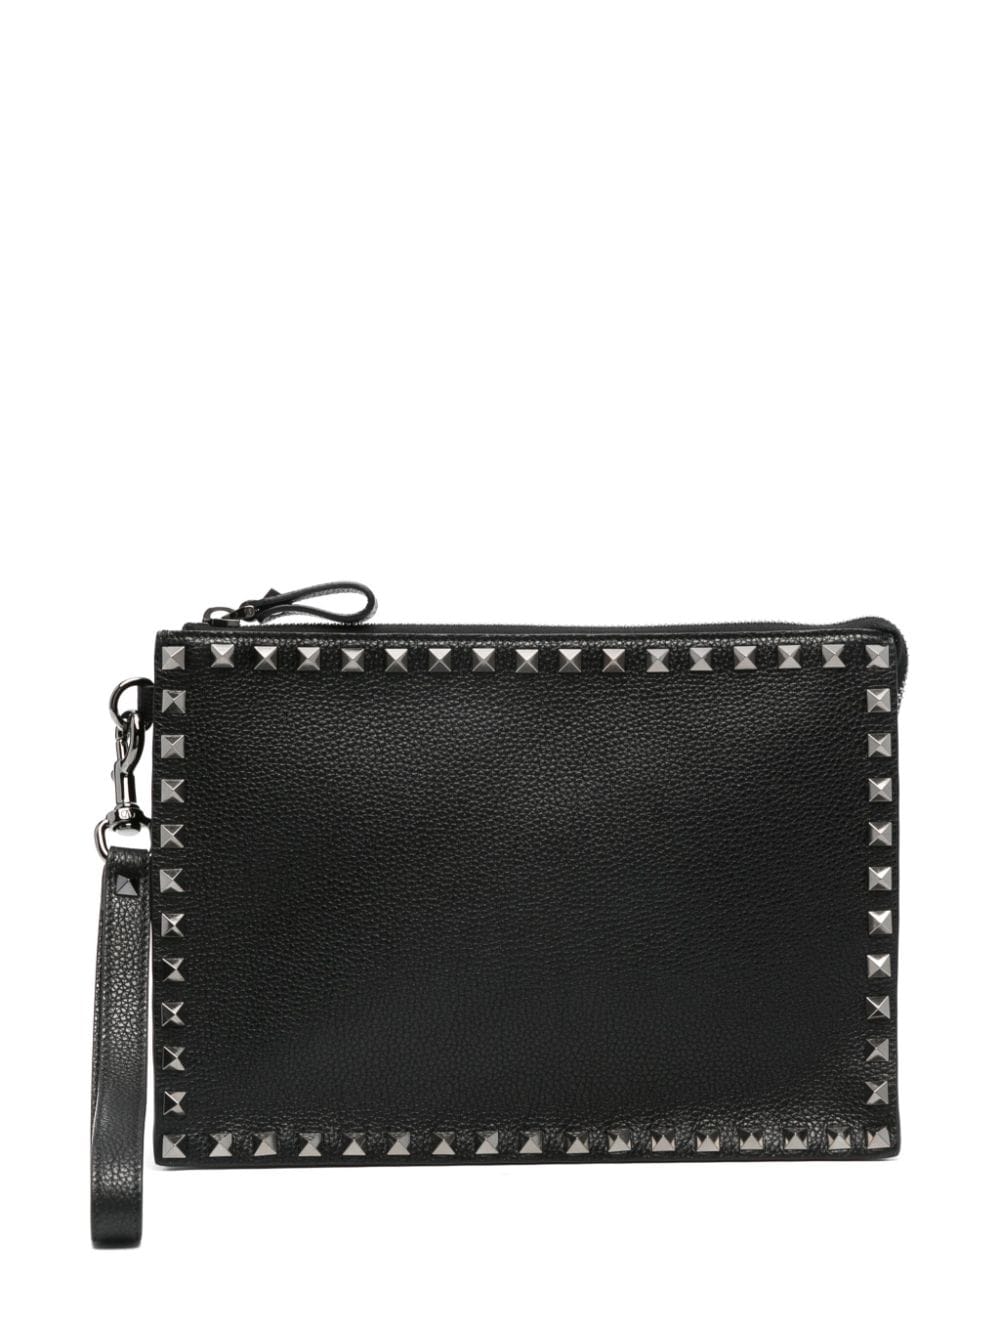 Rockstud leather clutch bag<BR/><BR/><BR/>